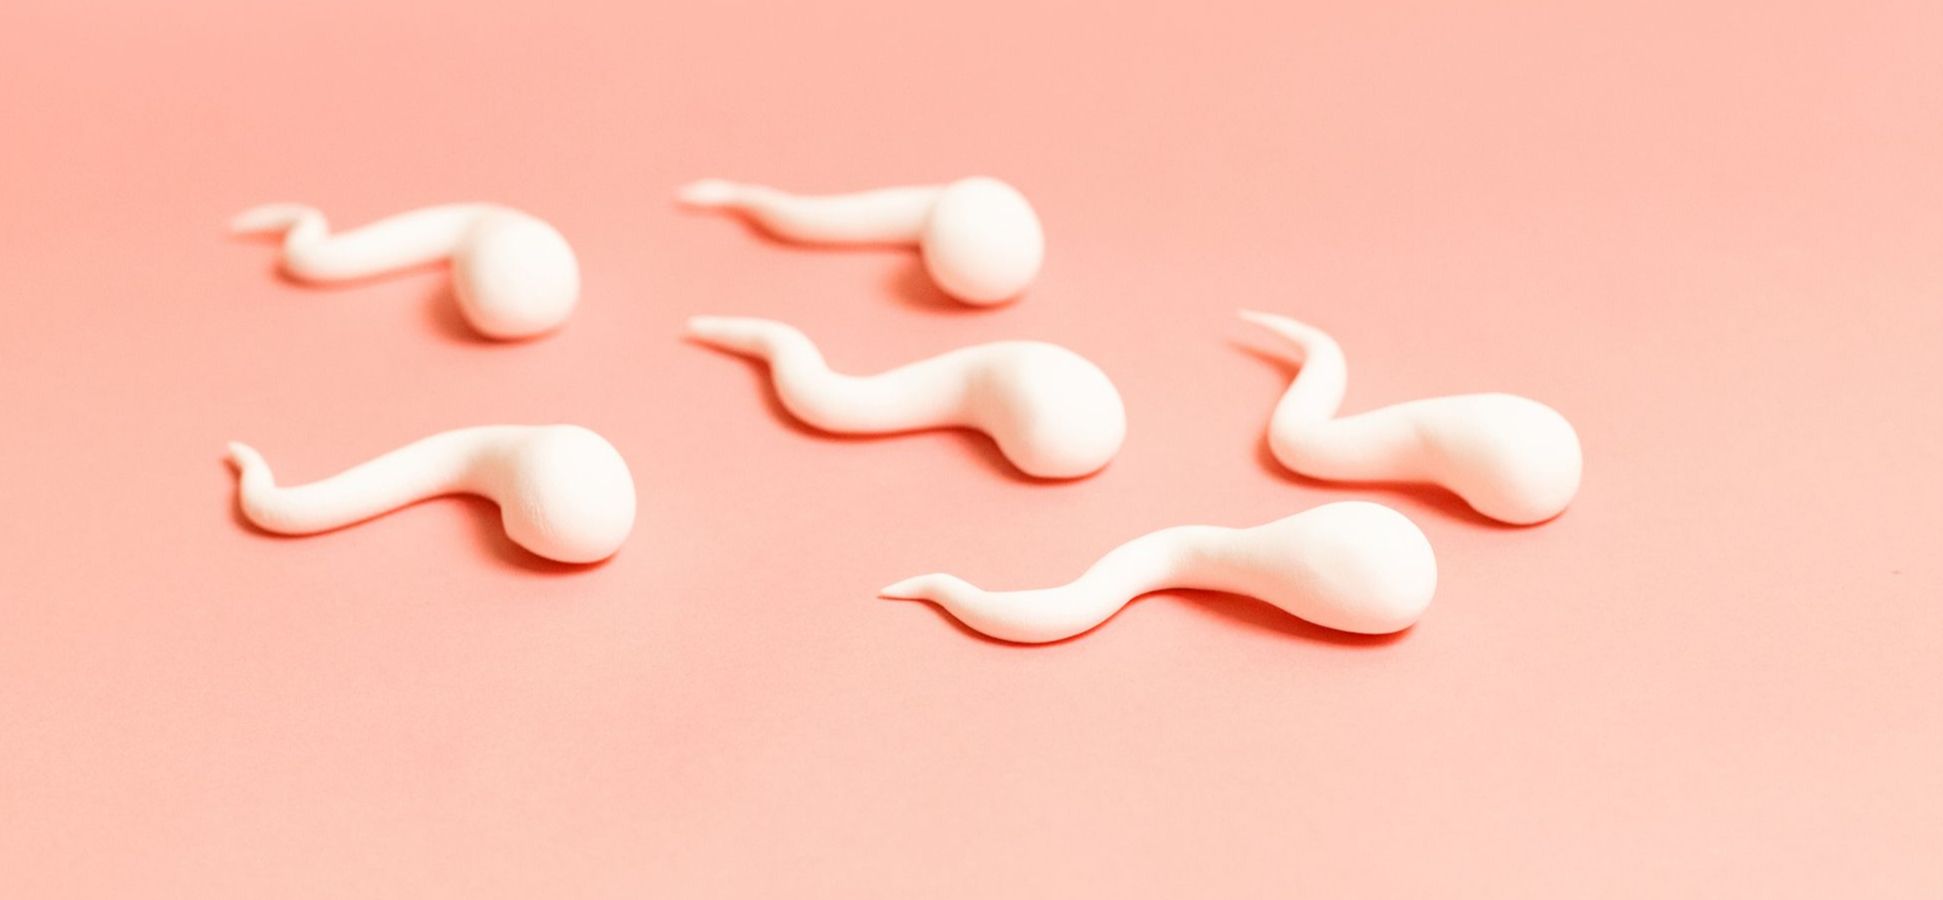 Sperma aus Marshmallows auf rosa Hintergrund